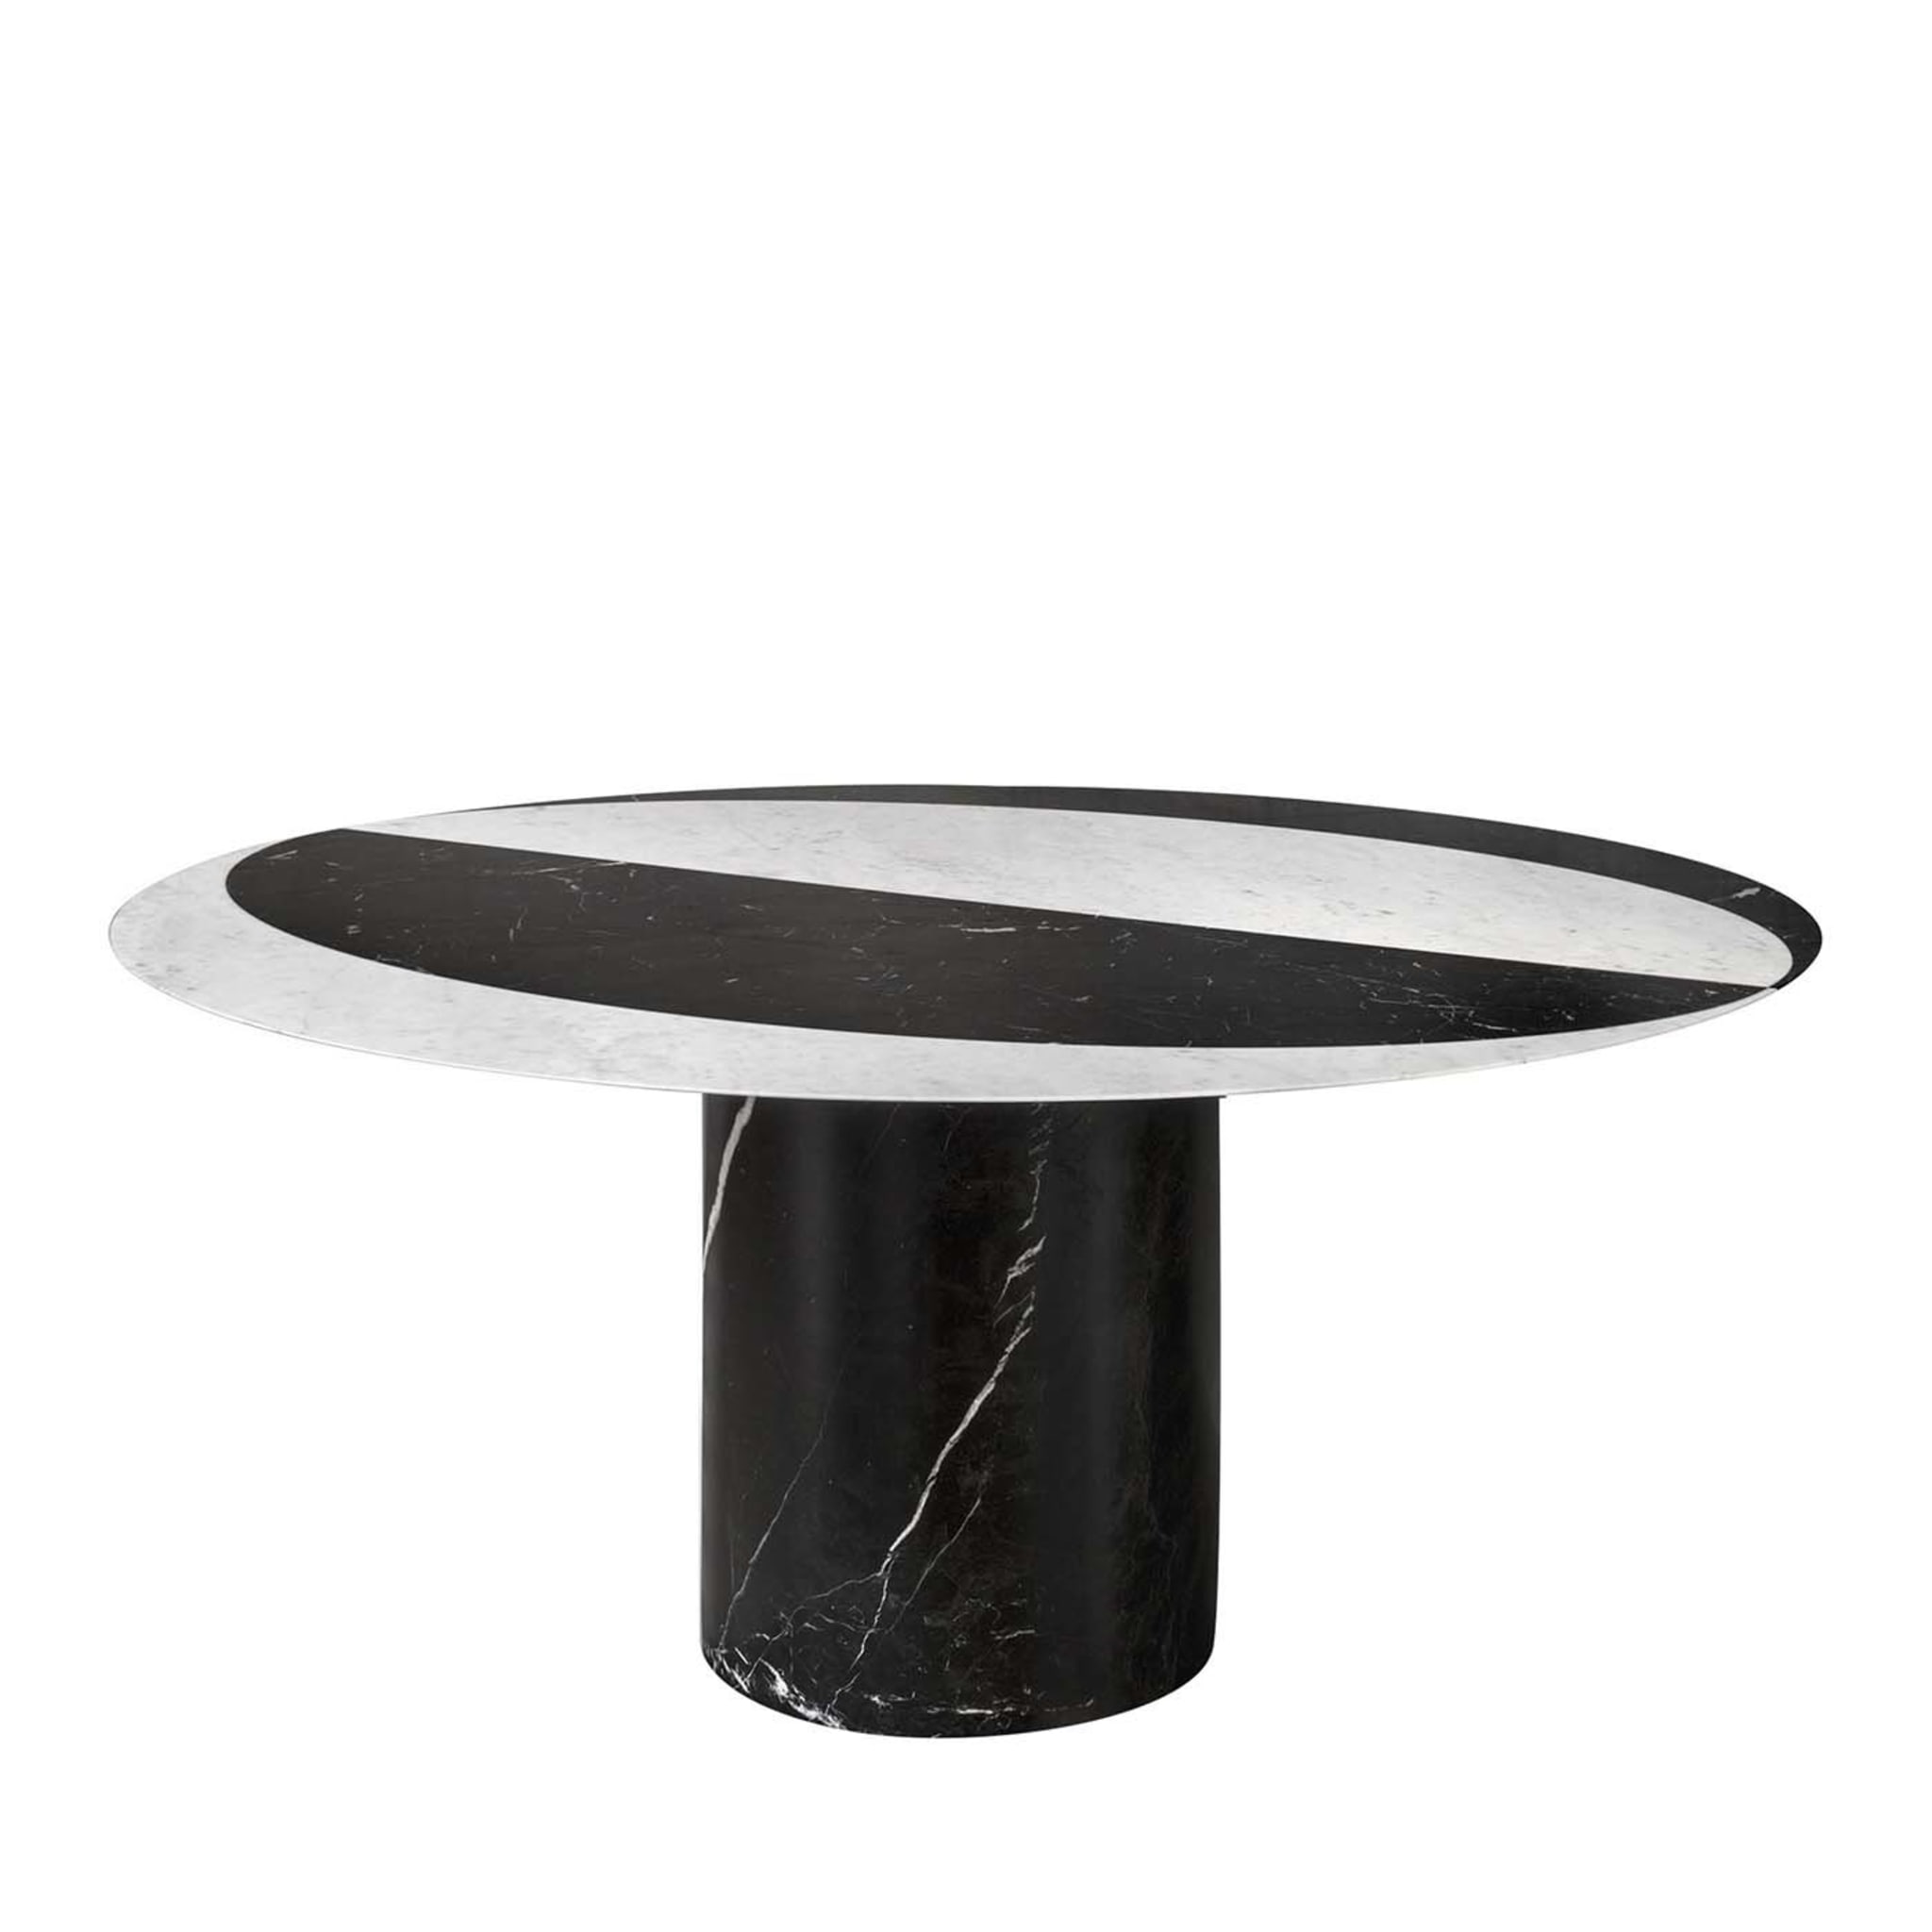 Proiezioni Table de salle à manger ronde en marbre noir et blanc #2 par Elisa Ossino - Vue principale